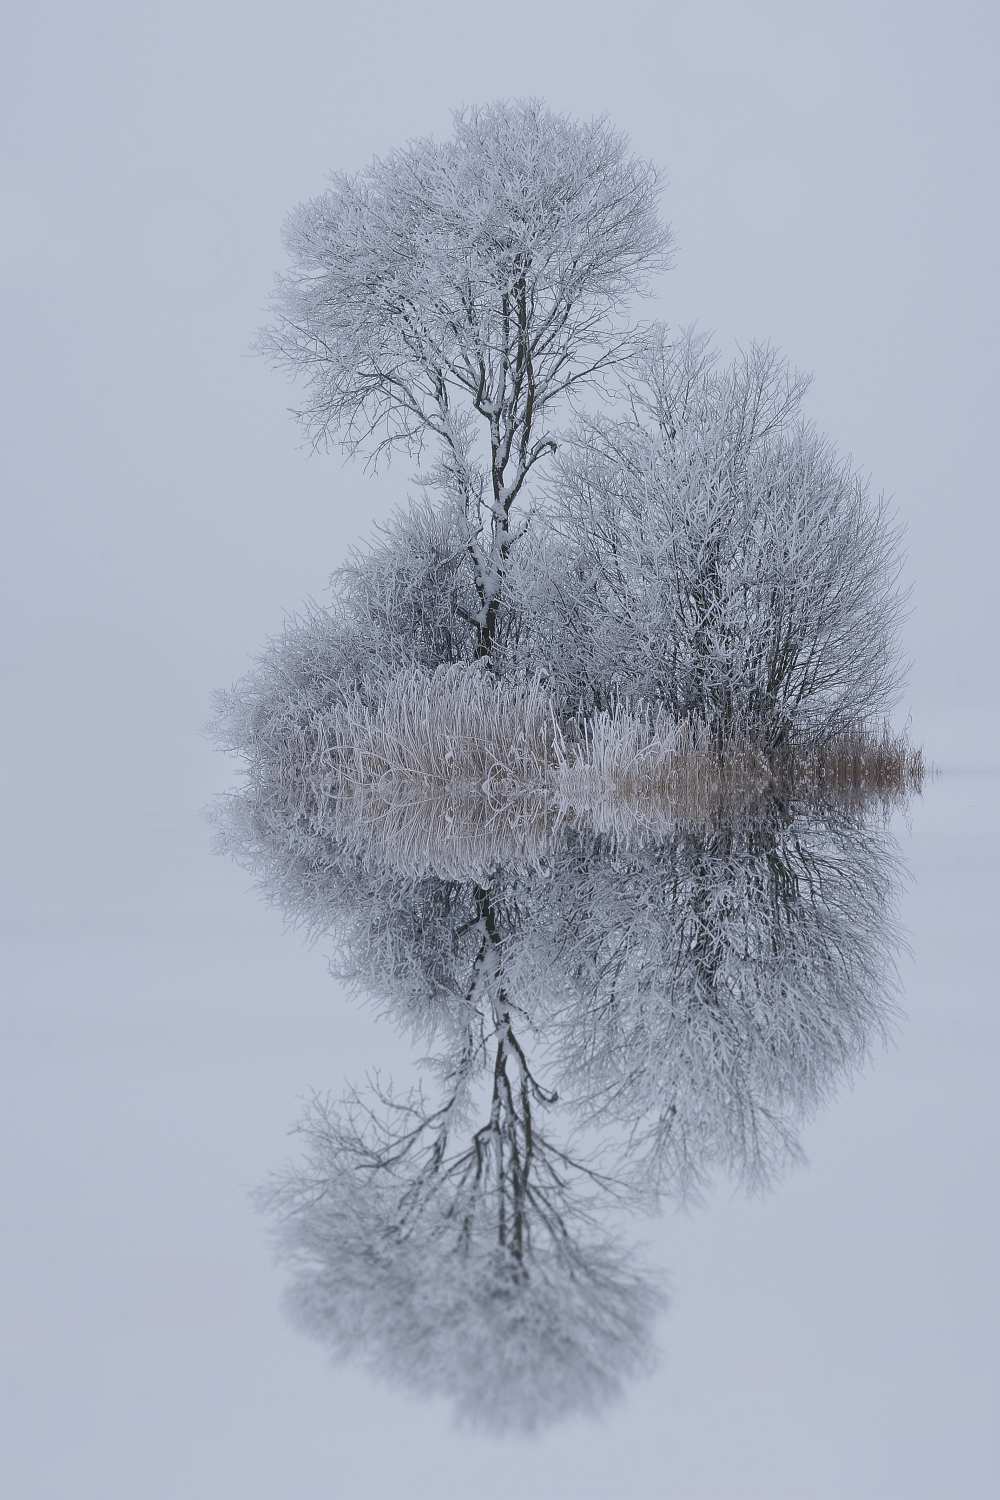 winter stillness from Norbert Maier